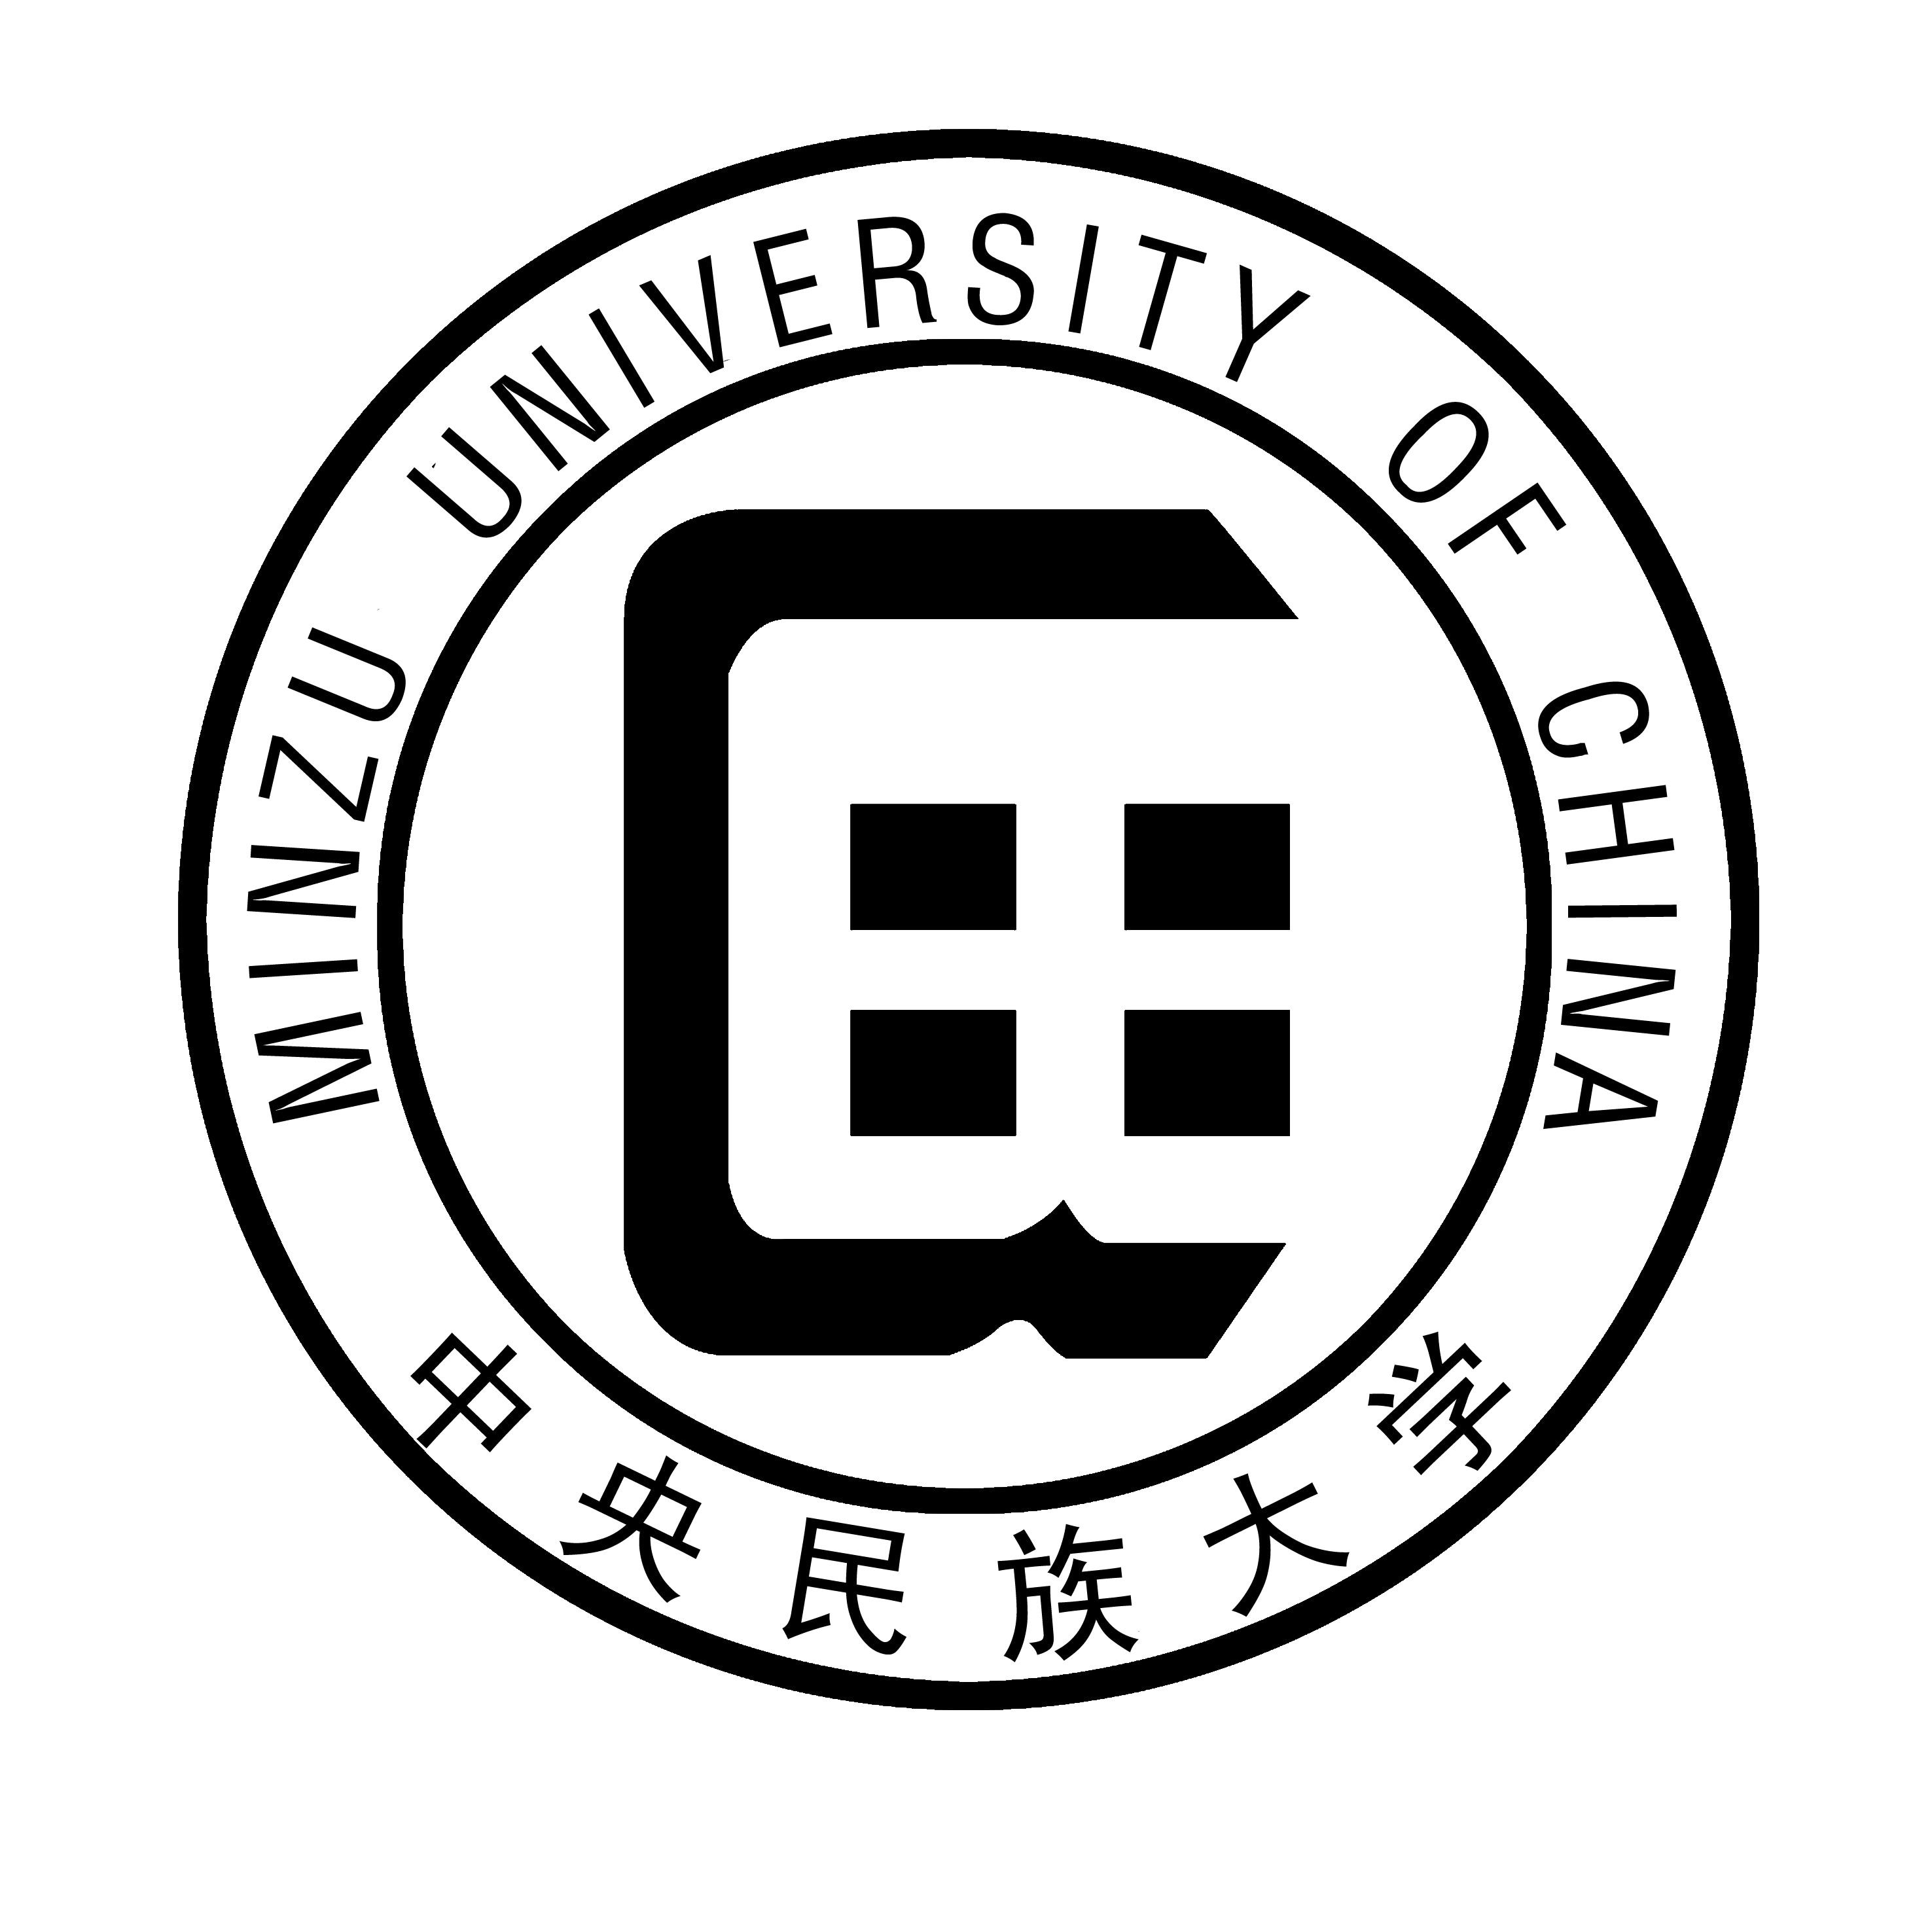 中央名族大学校徽图片